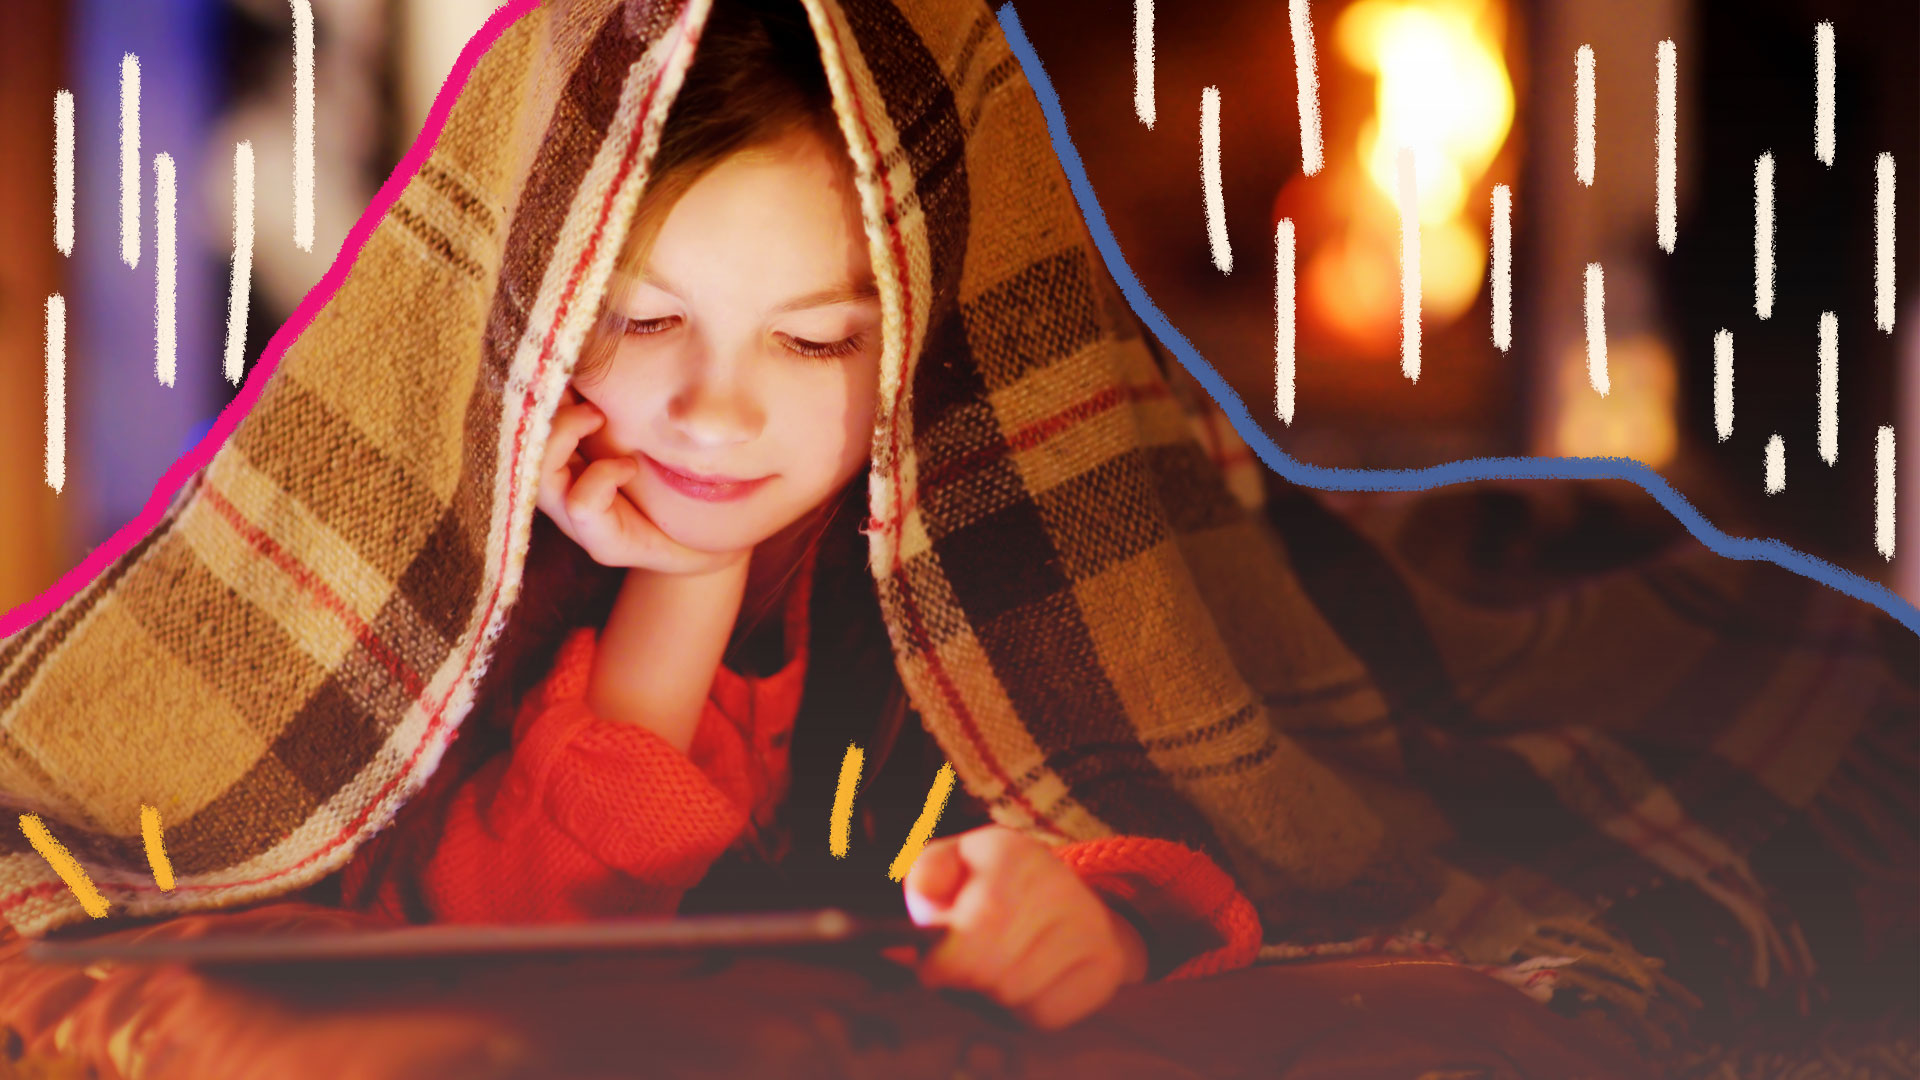 Imagem de uma menina com um cobertor na cabeça e seu rosto apoiado. Ela está lendo um livro